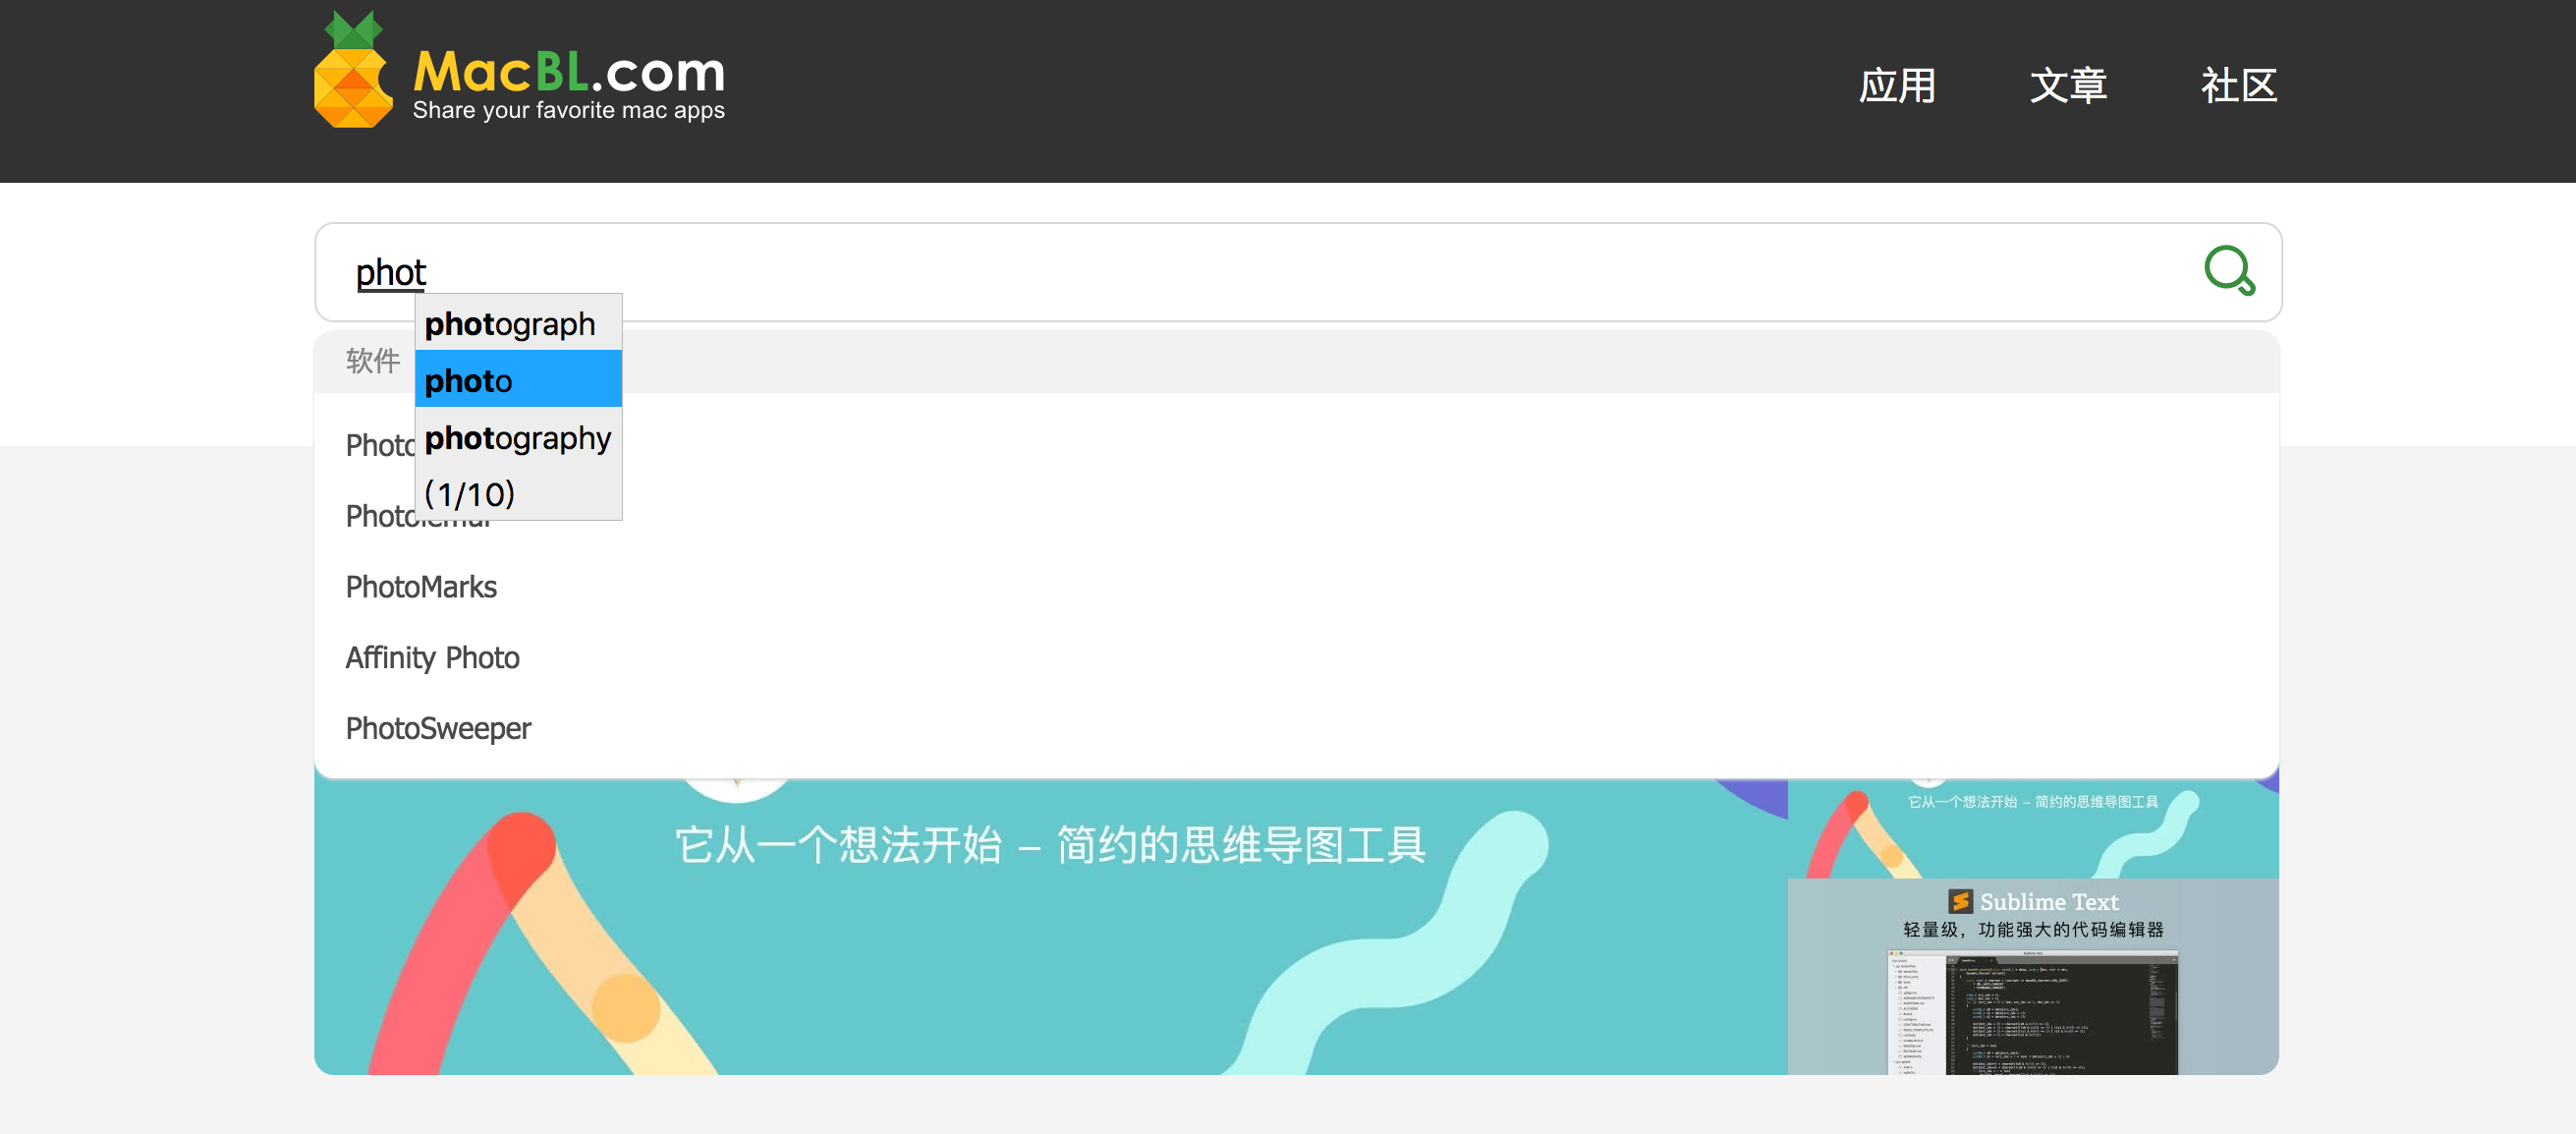 自然輸入法 10.2.0 中文繁体字输入法